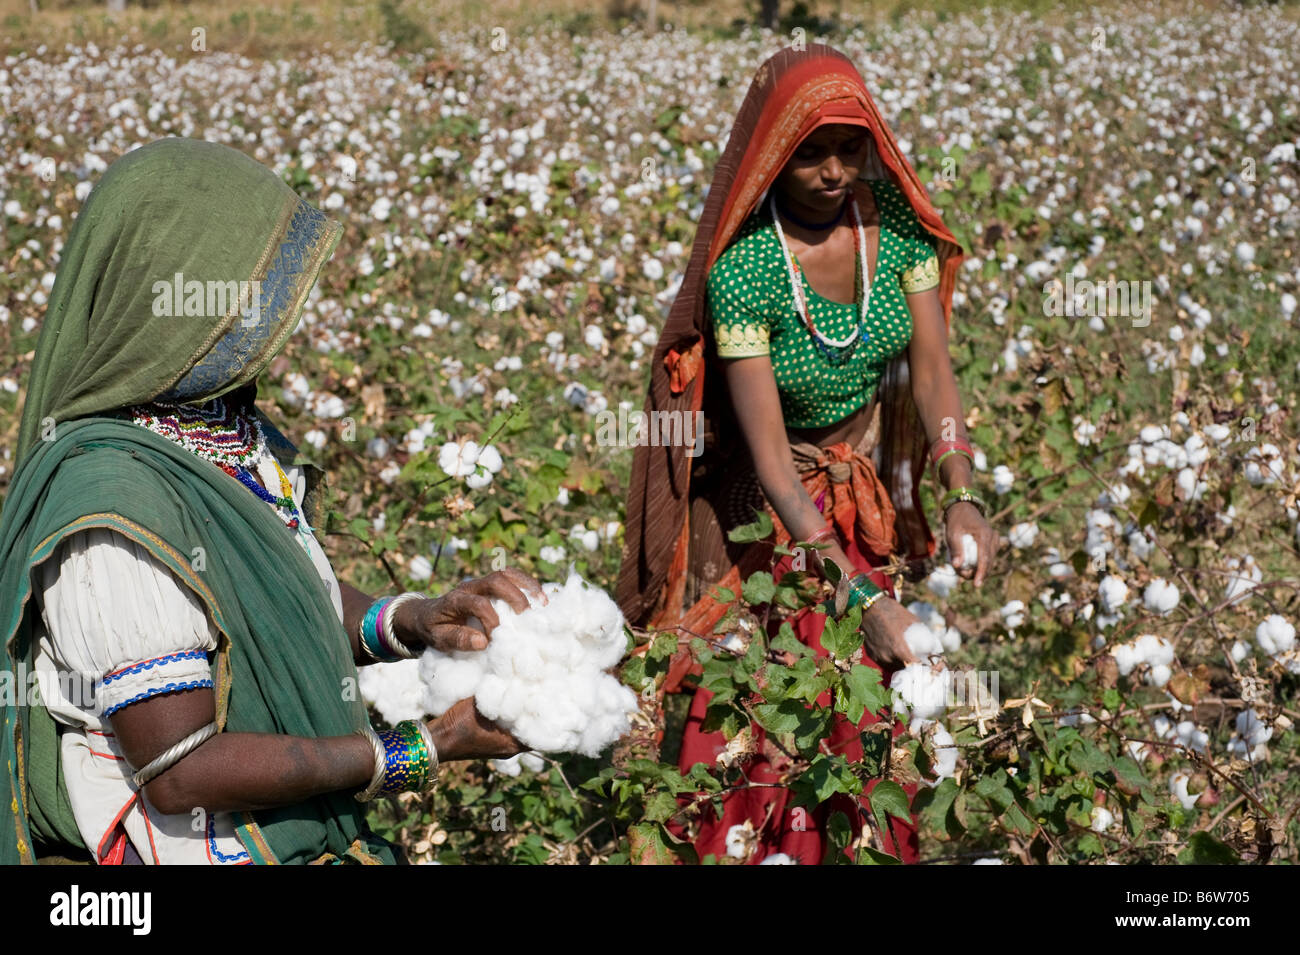 L'Inde M.P. Khargone , le commerce équitable et coton bio , agriculture femmes tribales dans la région de sari pluck coton par part Banque D'Images